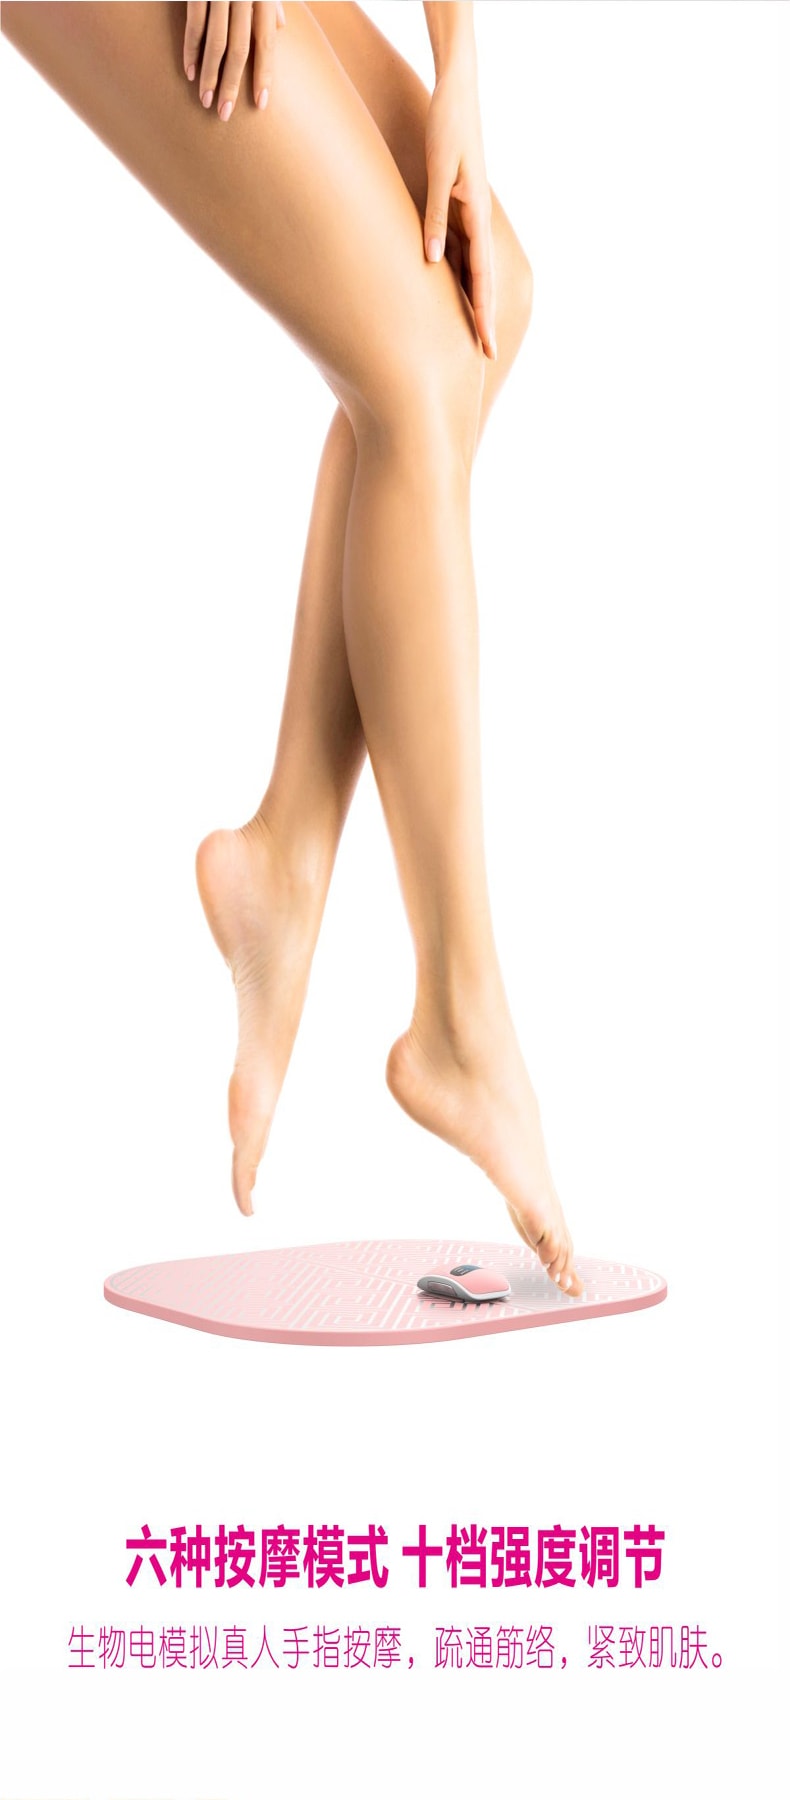 【清倉大減價】【風靡日本 EMS美腿按摩墊】LaPupil 塑形美腿緩解疲勞按摩腳墊 1件